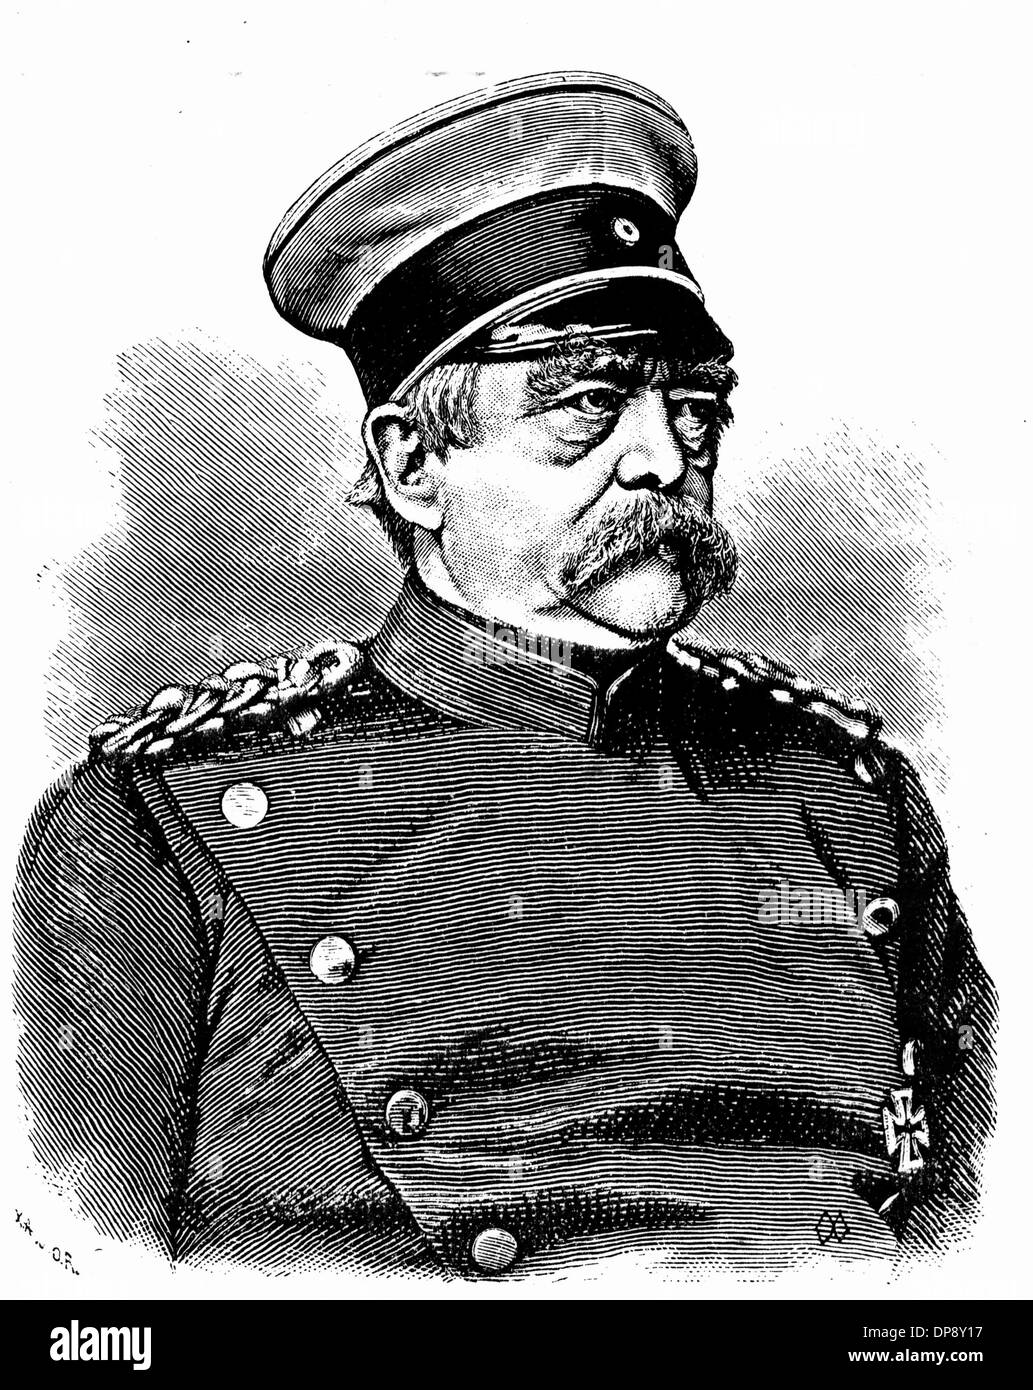 Zeichnung des deutschen Staatsmannes Otto von Bismarck. Bismarck war Reichskanzler von 1871 bis 1890. Seine Einführung der Sozialversicherung gilt heute als epochale. Stockfoto